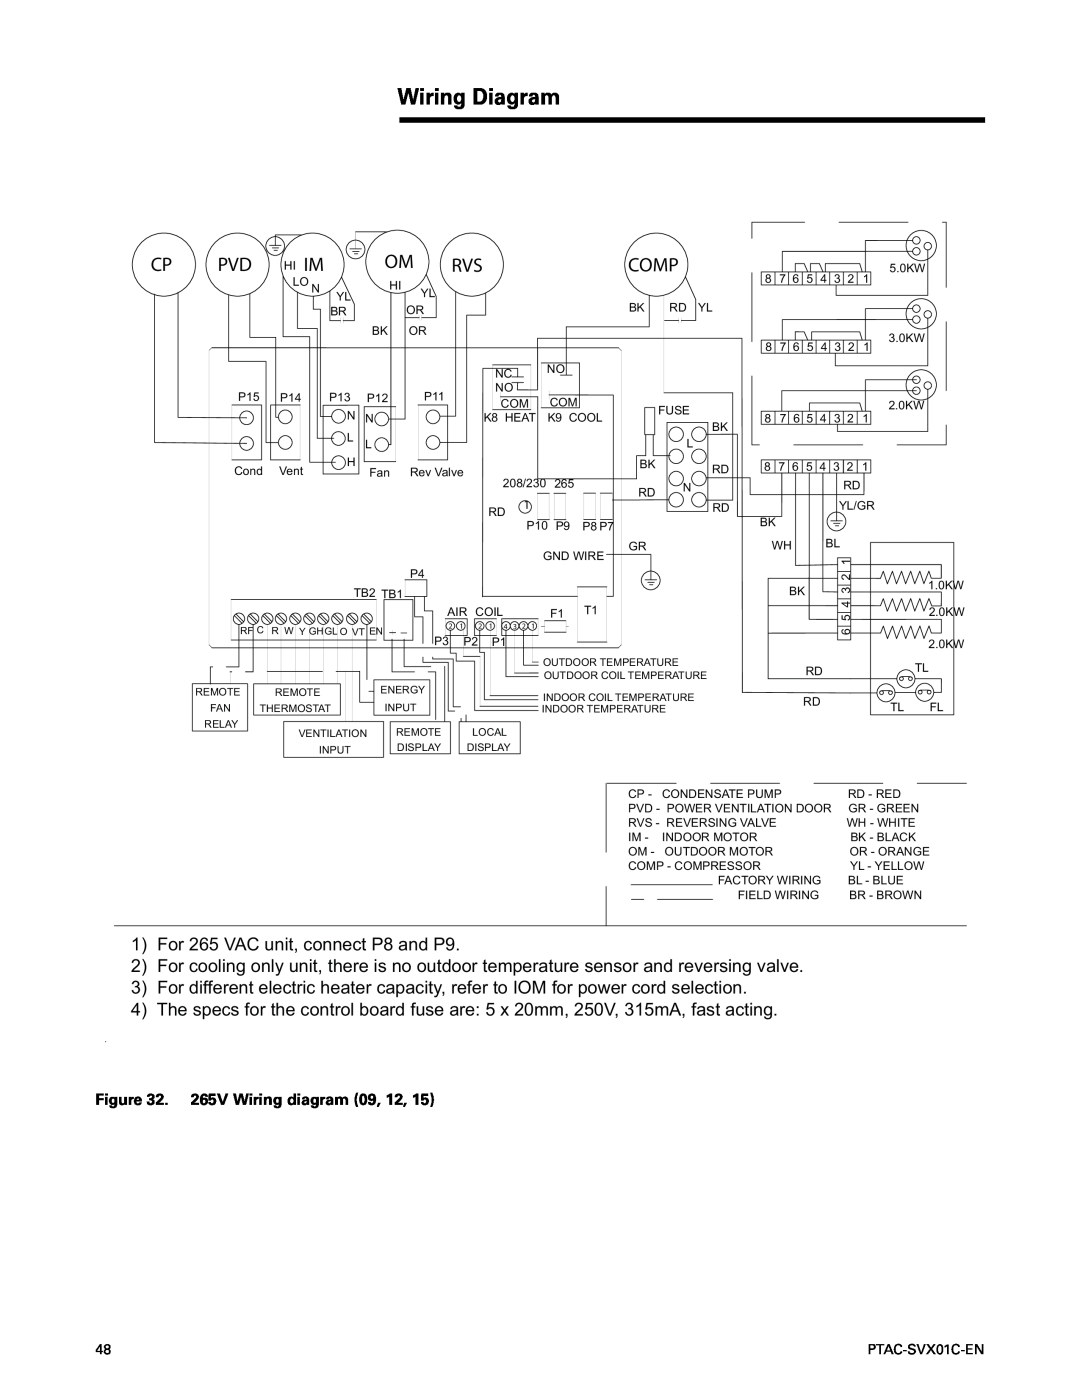 Trane PTAC-SVX01C-EN manual Wiring Diagram 